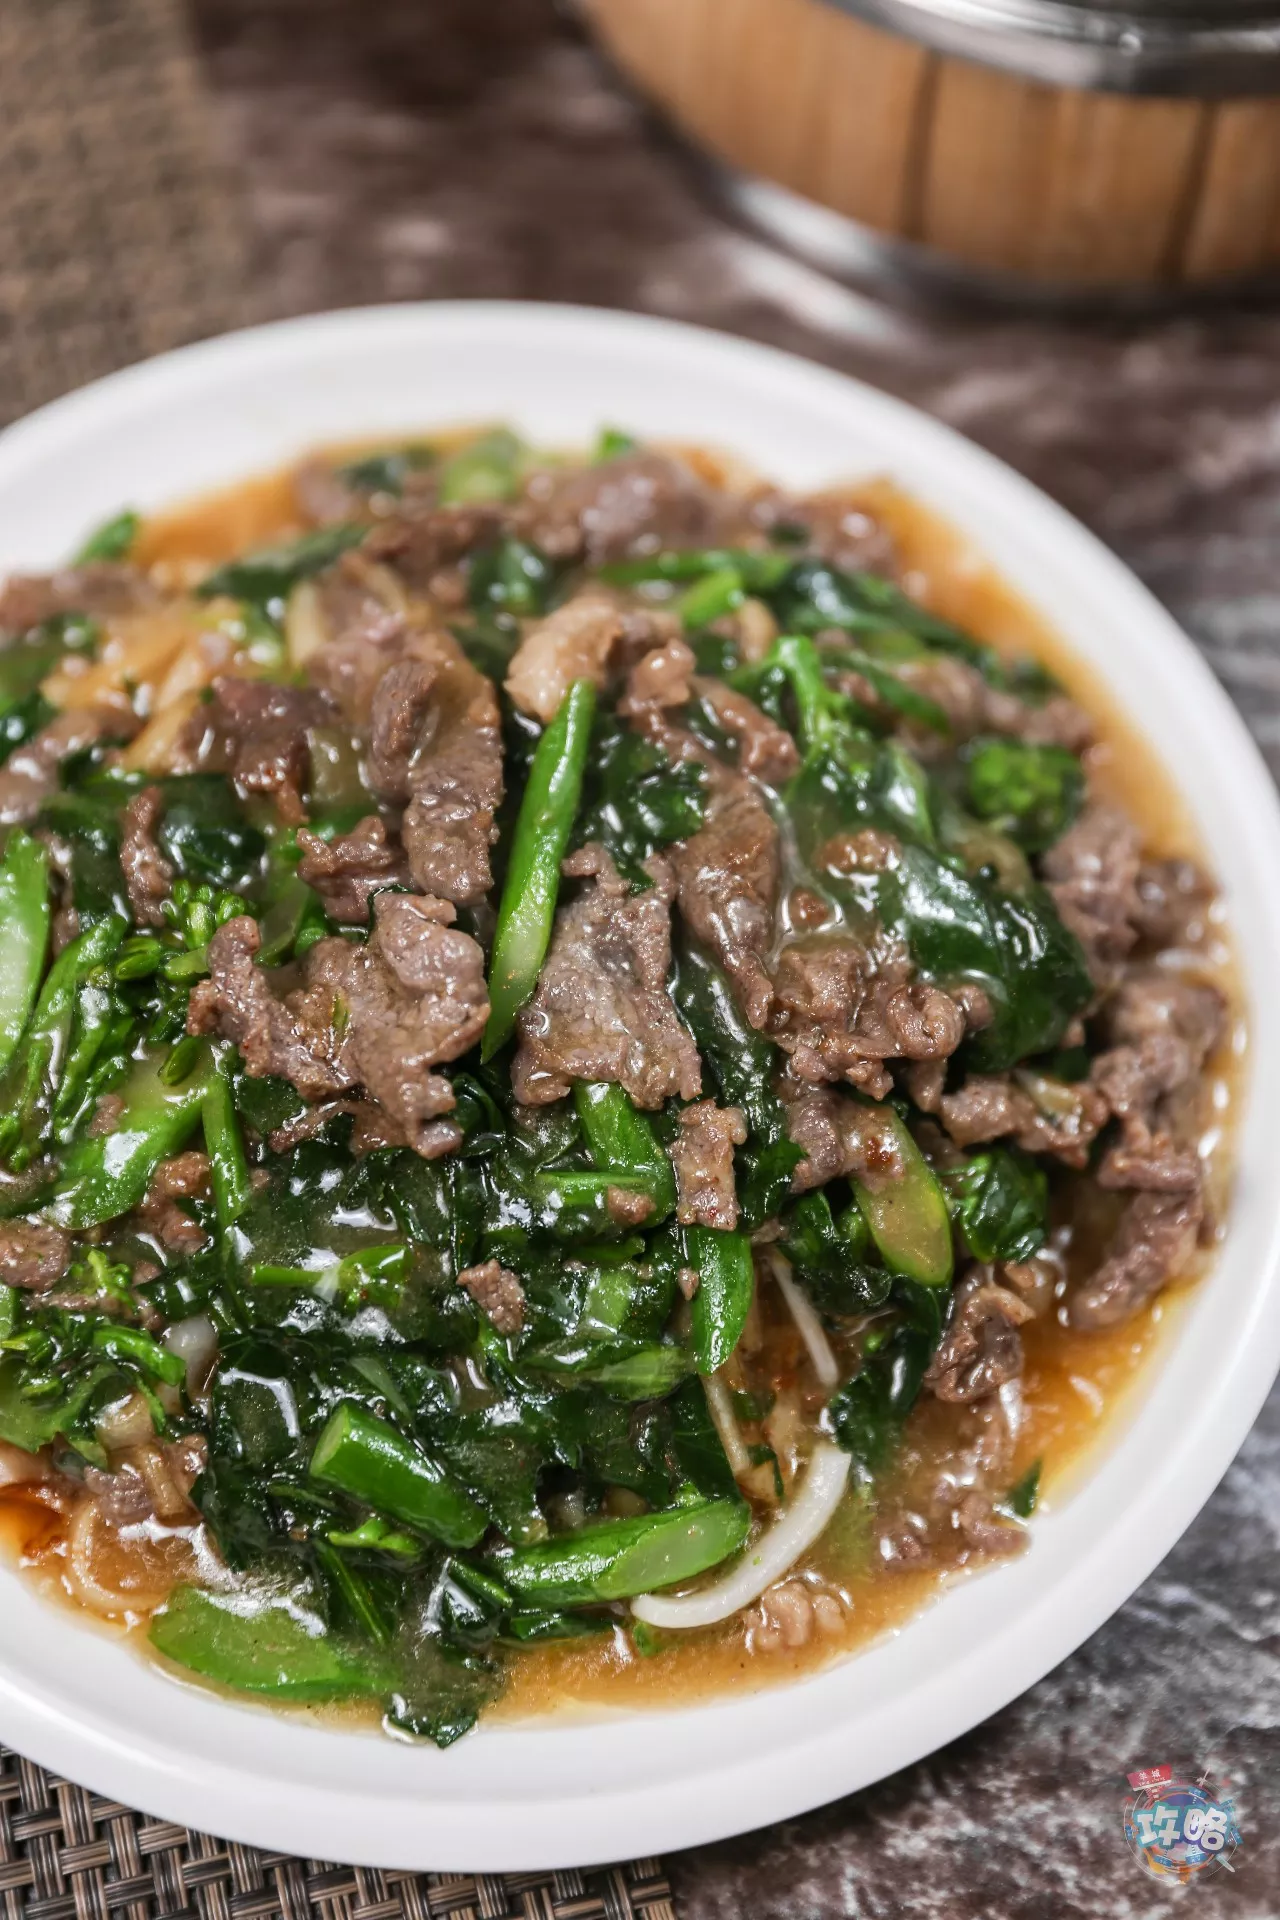 潮汕最经典的湿炒牛肉粿条早就成了 牛肉火锅的标配伴侣,来吃牛肉火锅